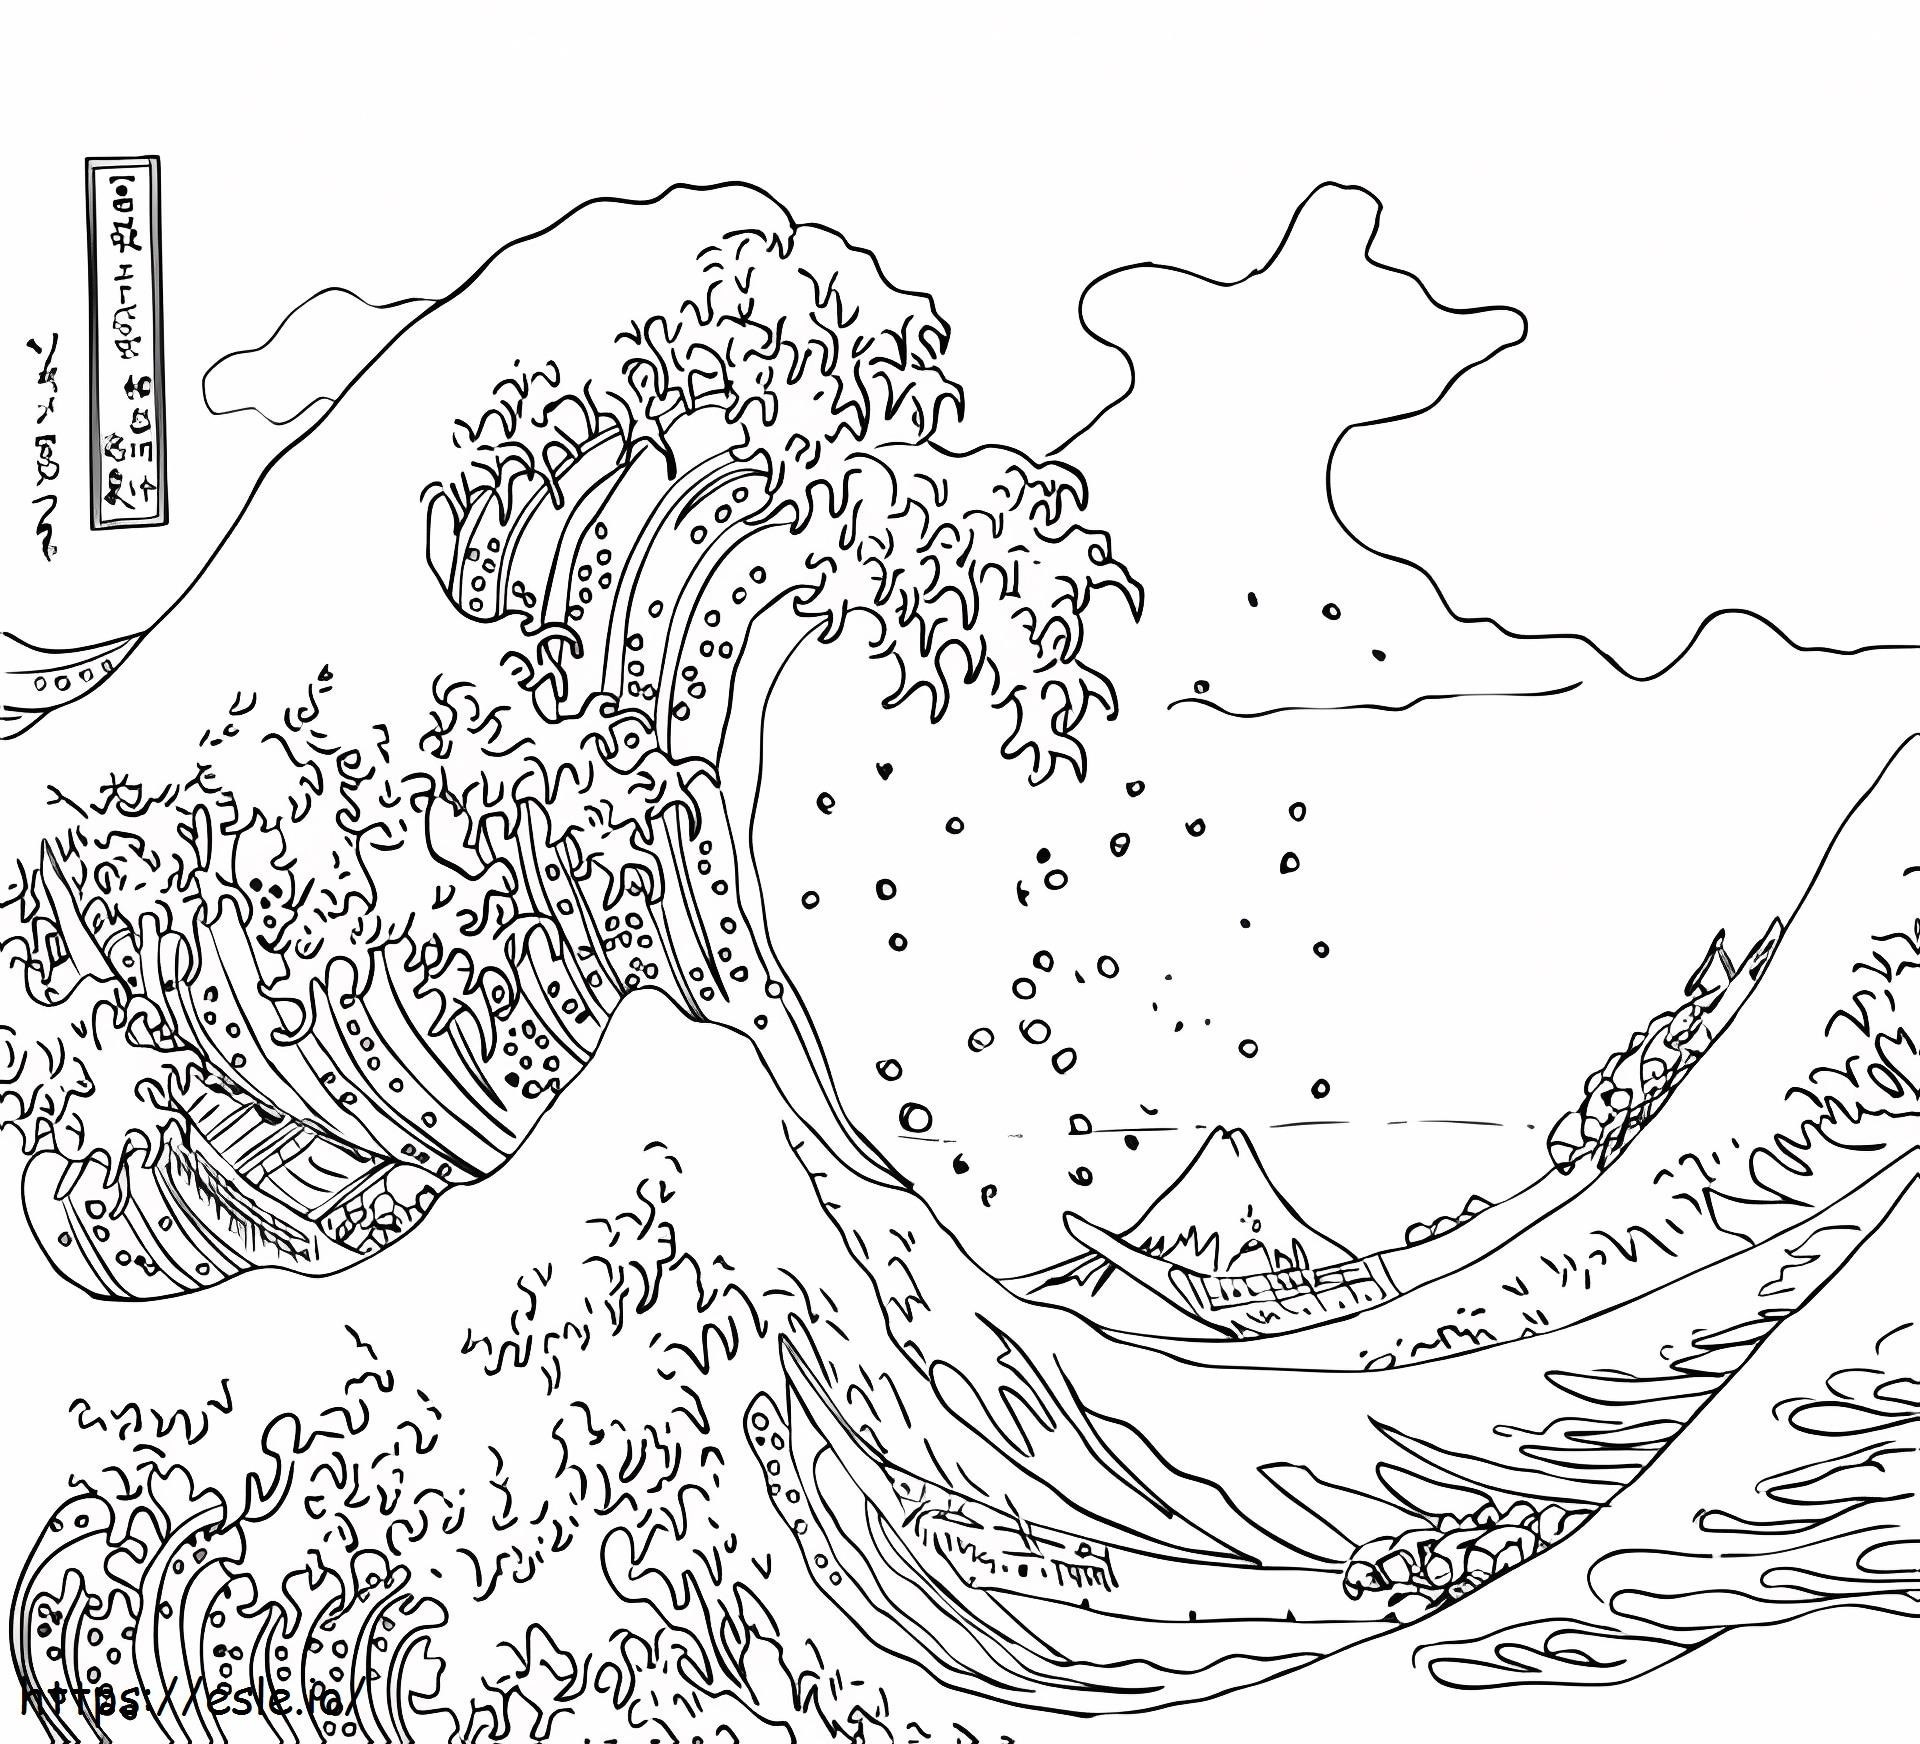  Büyük Dalga Kapalı Kanagawa A4 boyama